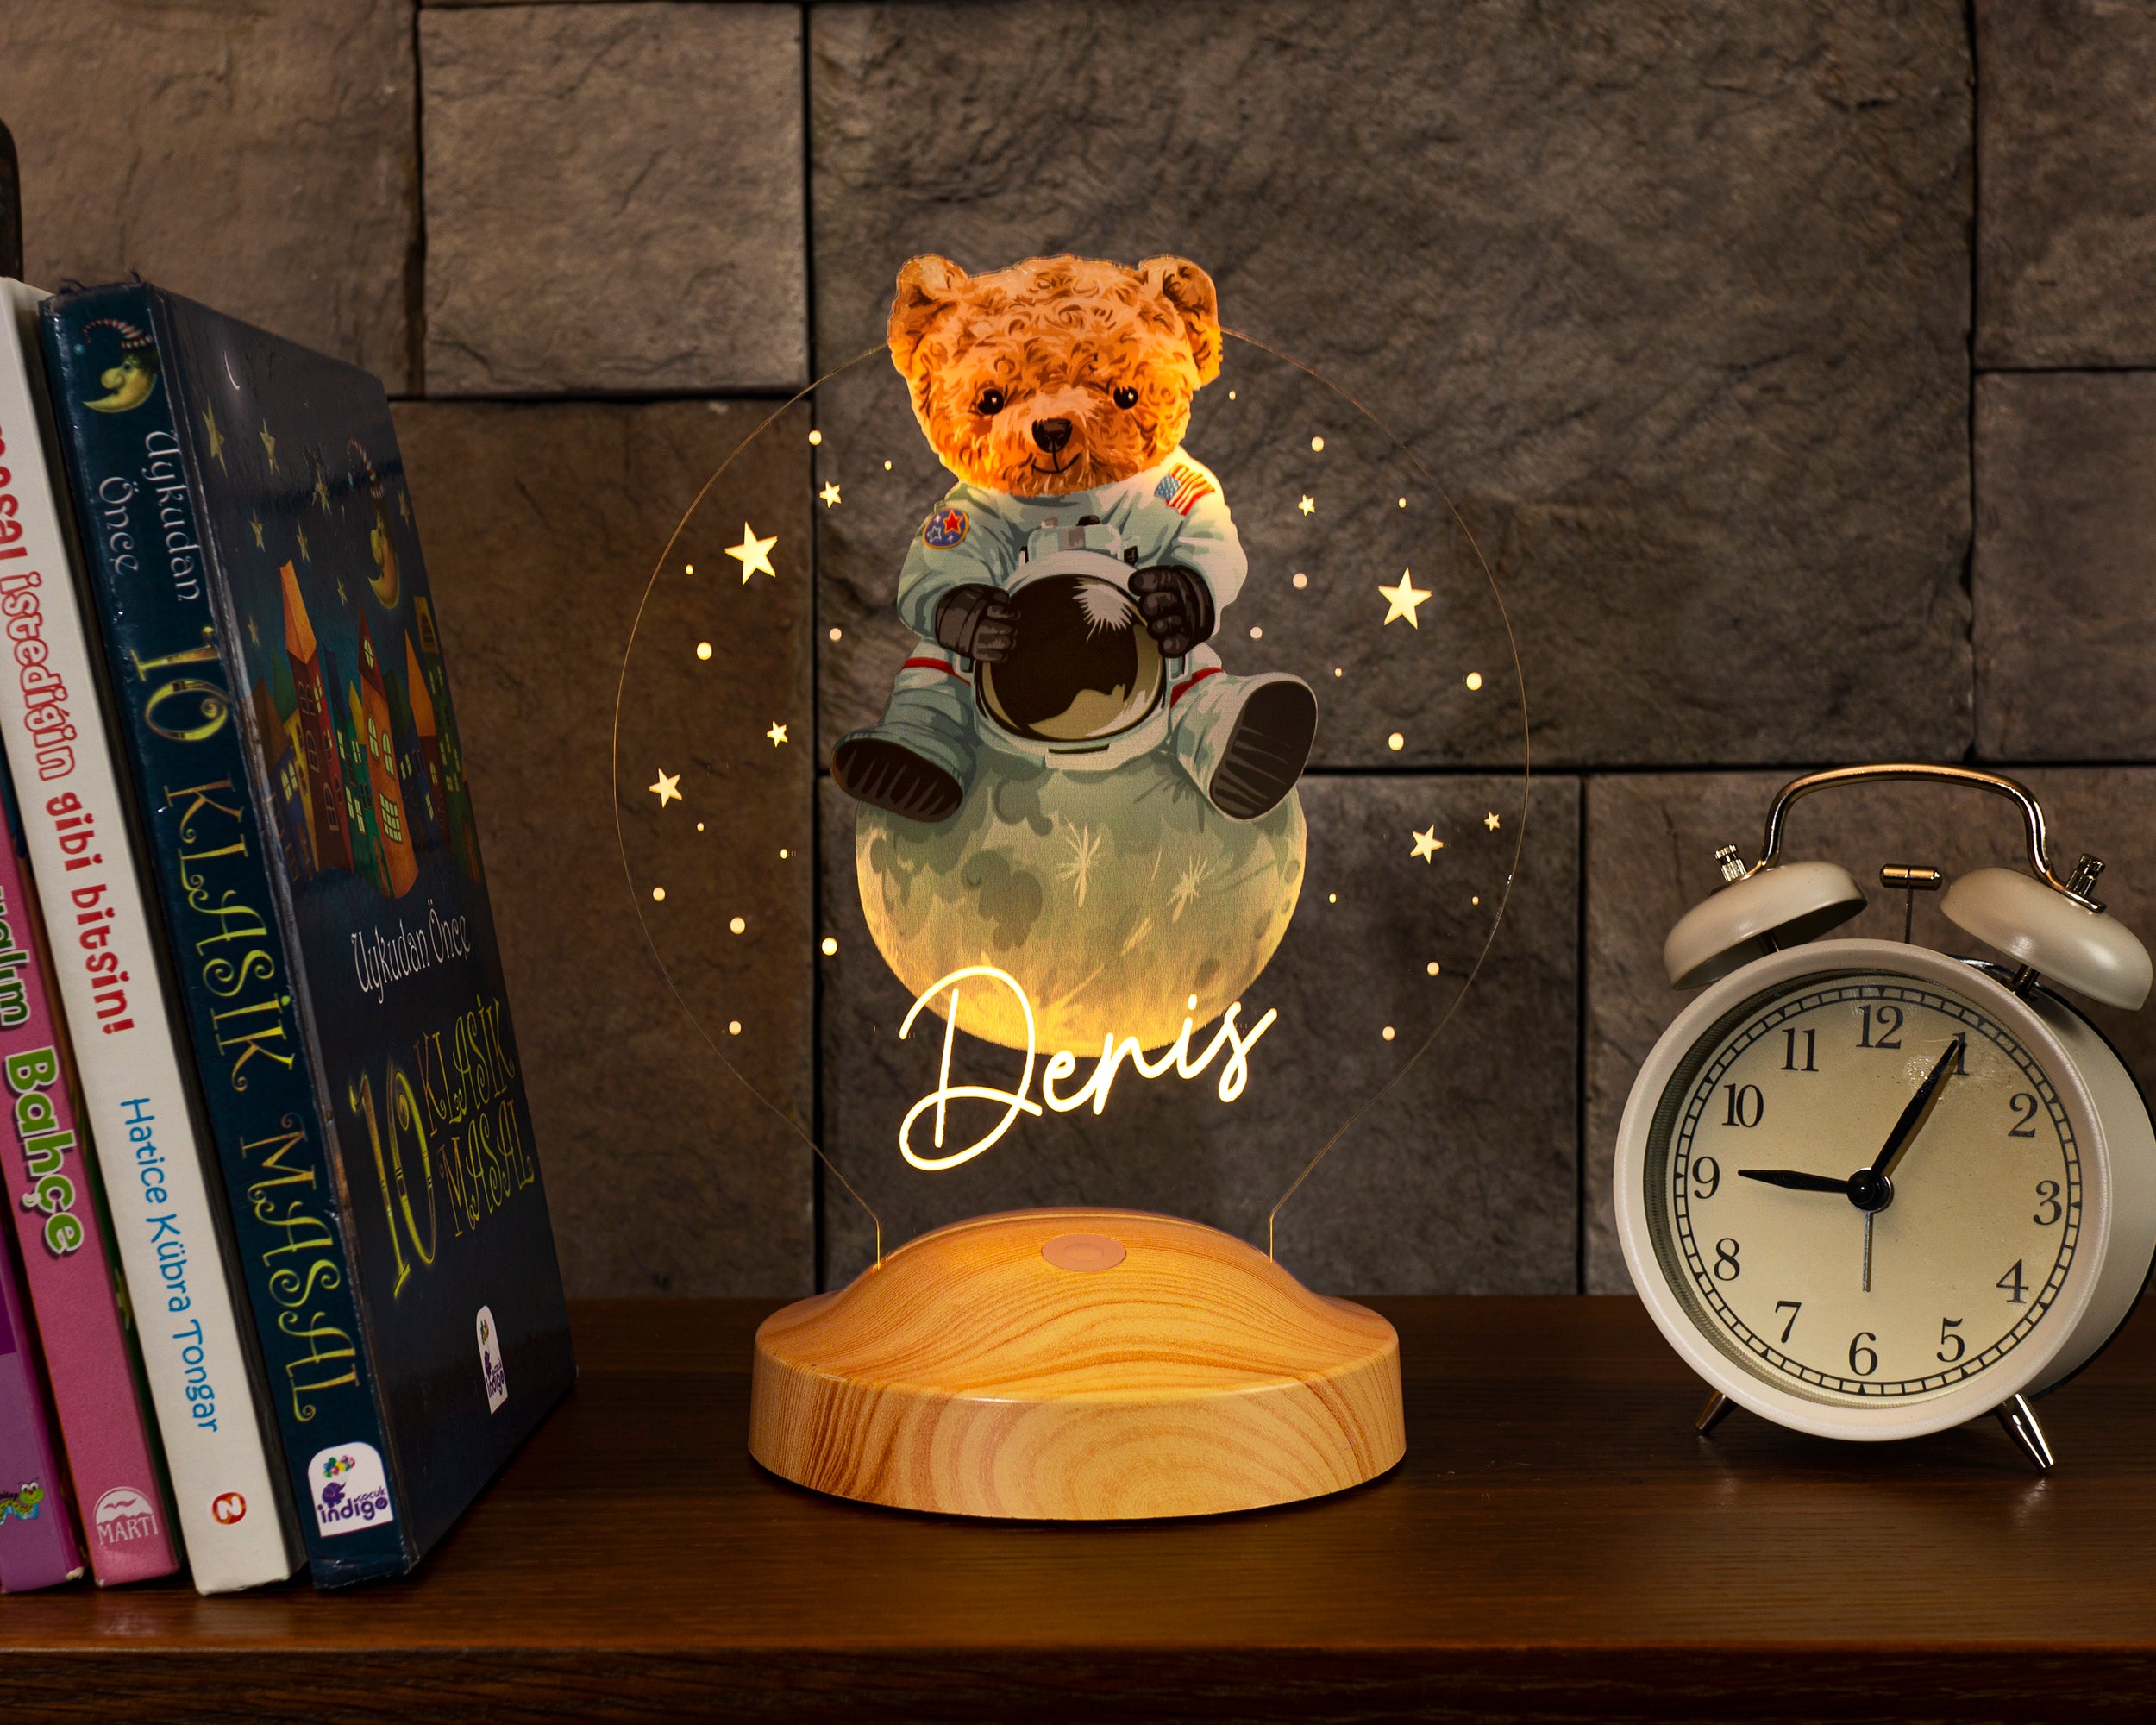 Teddybär Personalisierte Geschenke 3D Lampe mit Name UV Druck Geburtstagsgeschenk